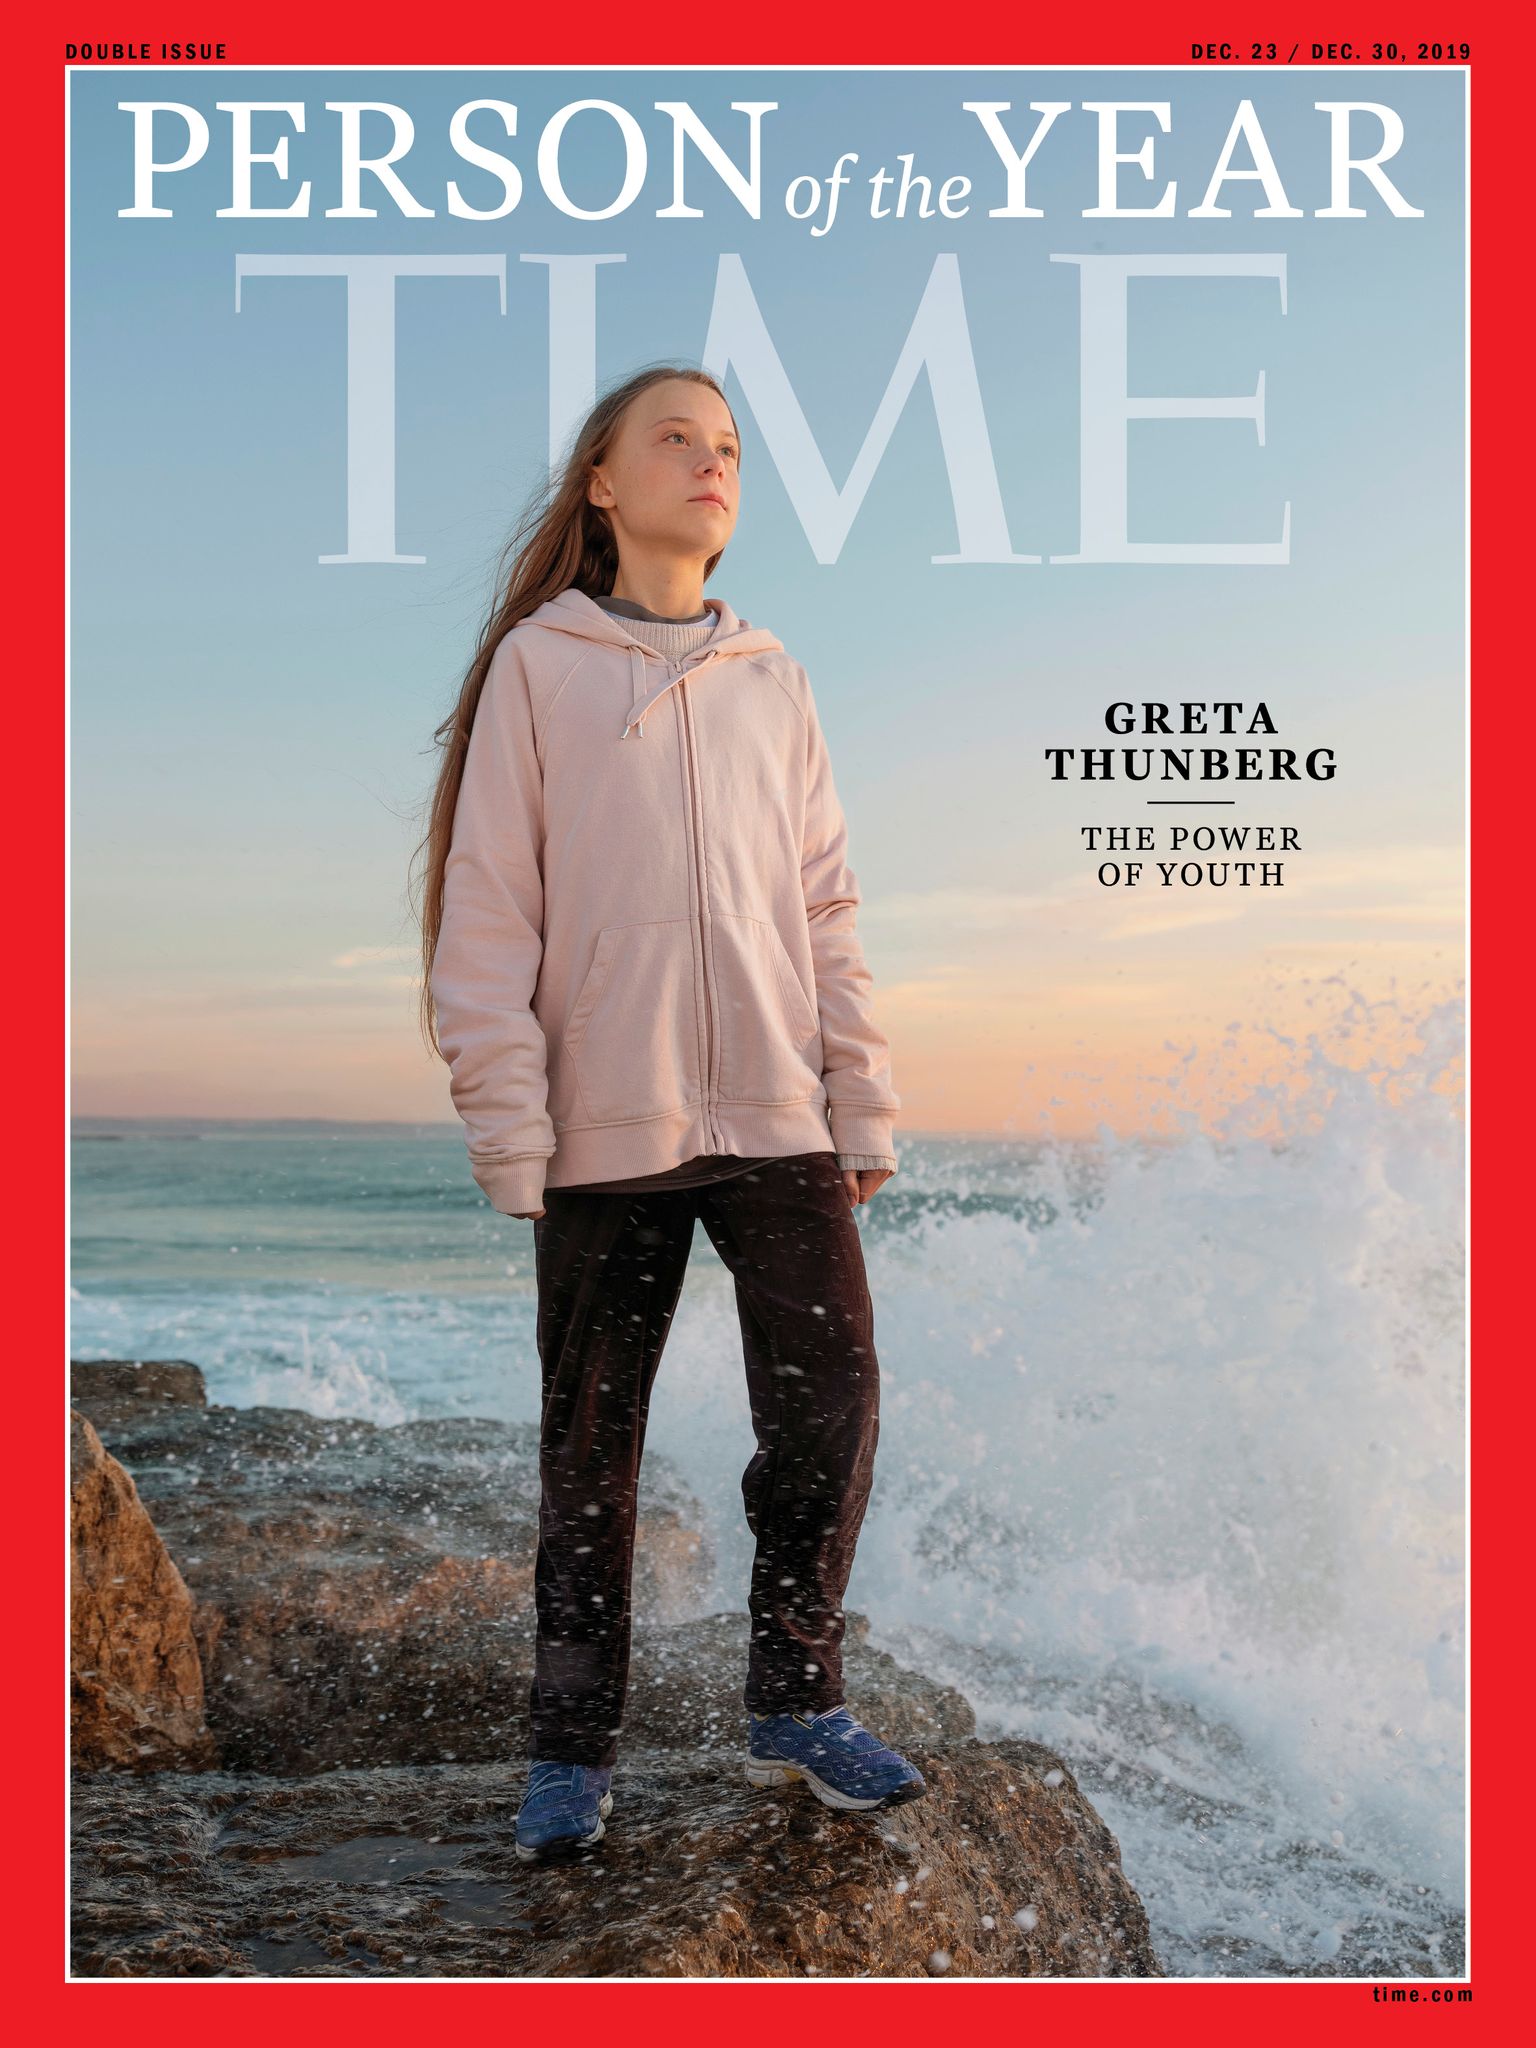 Time valis Greta Thunbergi aasta inimeseks